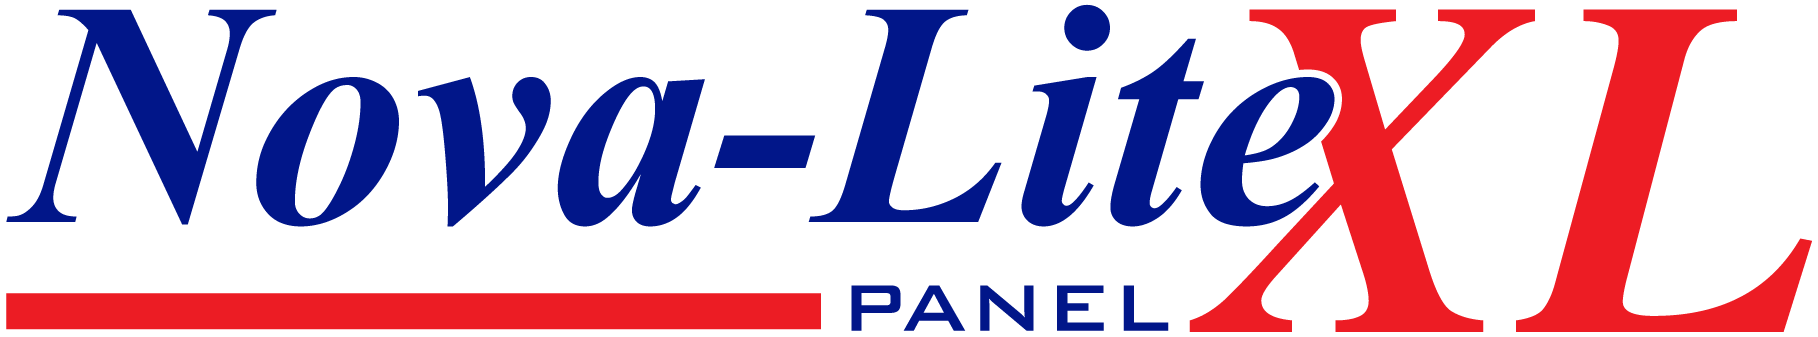 Nova-Lite XL Panel Logo